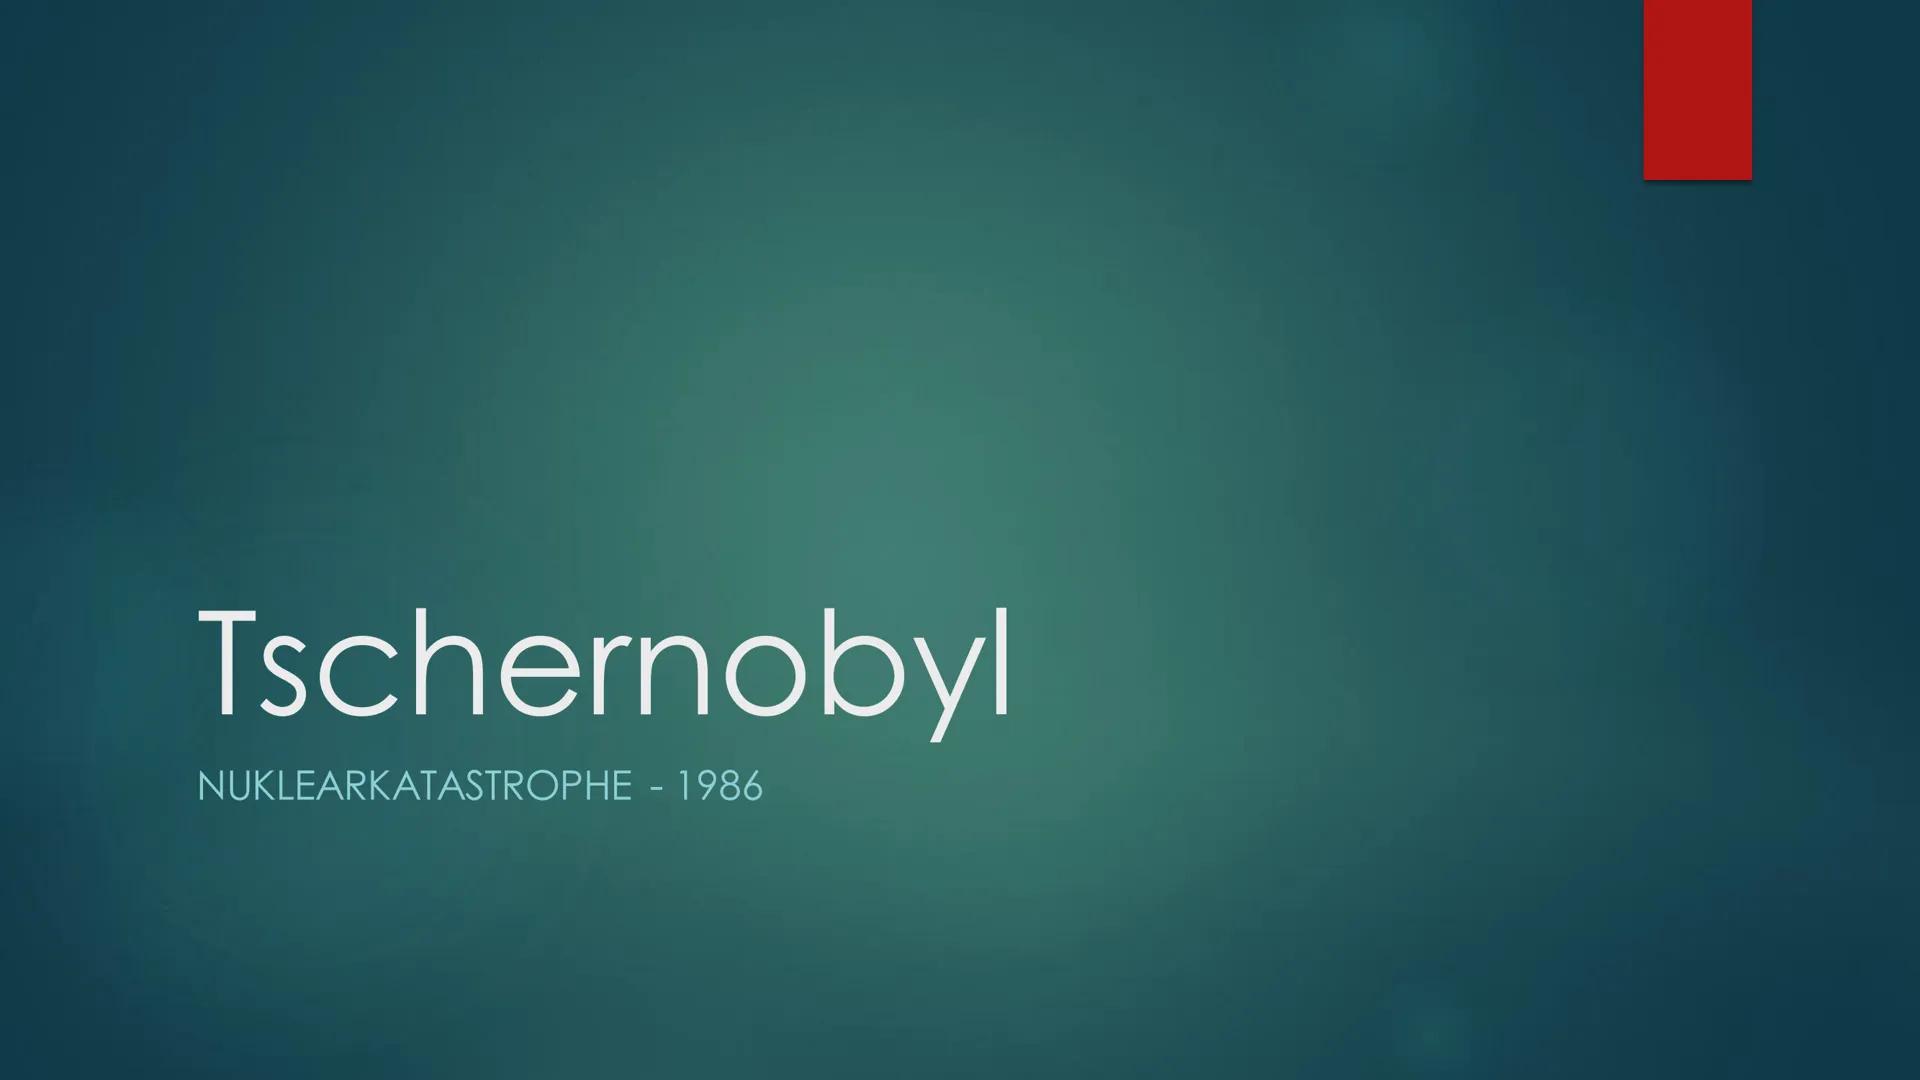 Tschernobyl
NUKLEARKATASTROPHE - 1986 Gliederung
▶
Nuklearkatastrophe
▸ Wie haben die Menschen reagiert?
► Folgen
▸ Wie sieht es heute aus?
